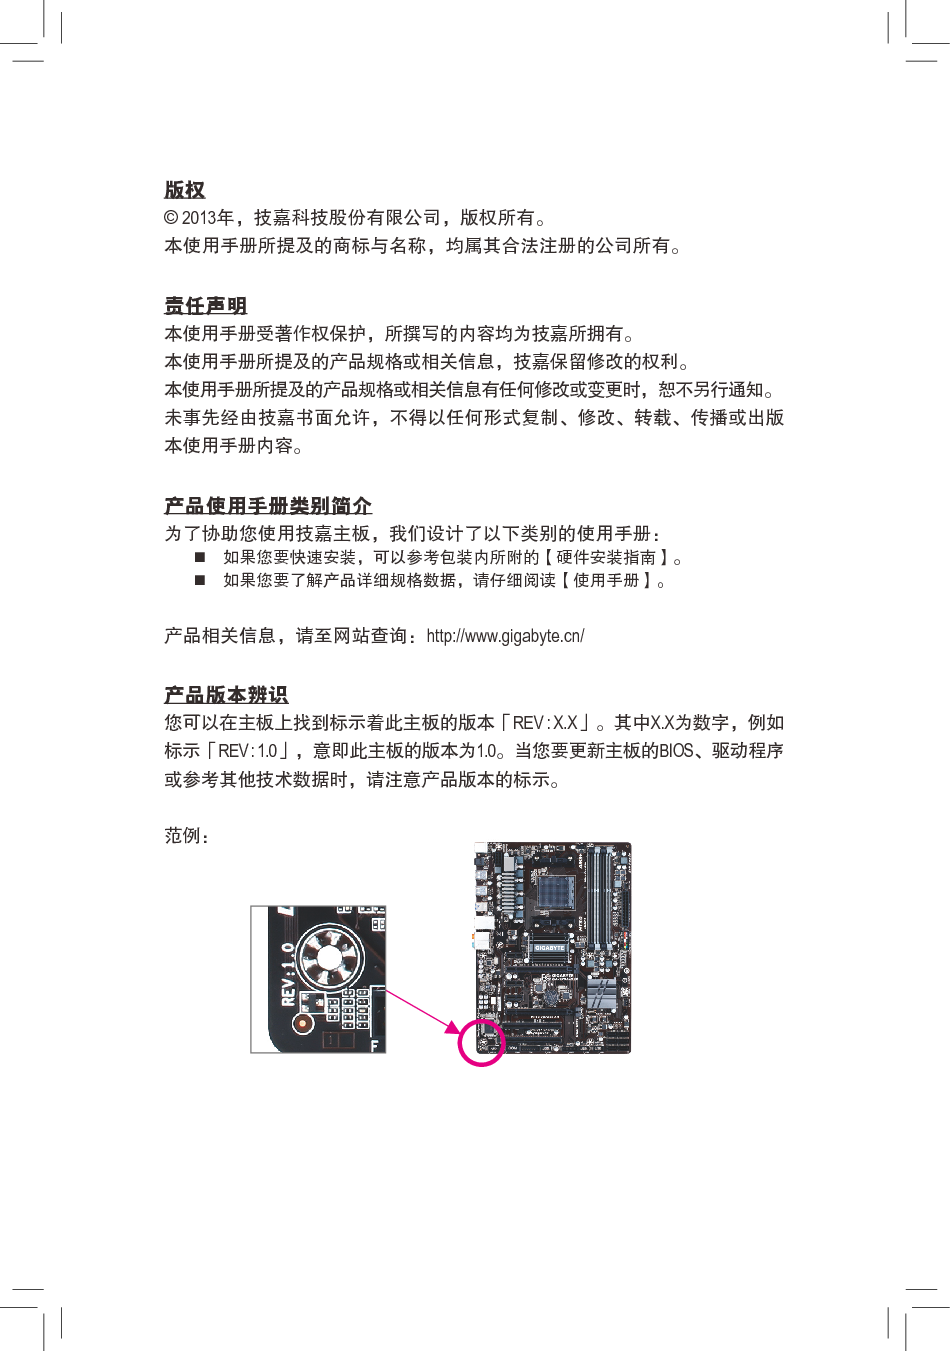 技嘉 Gigabyte GA-970A-D3P 1001版 使用手册 第2页